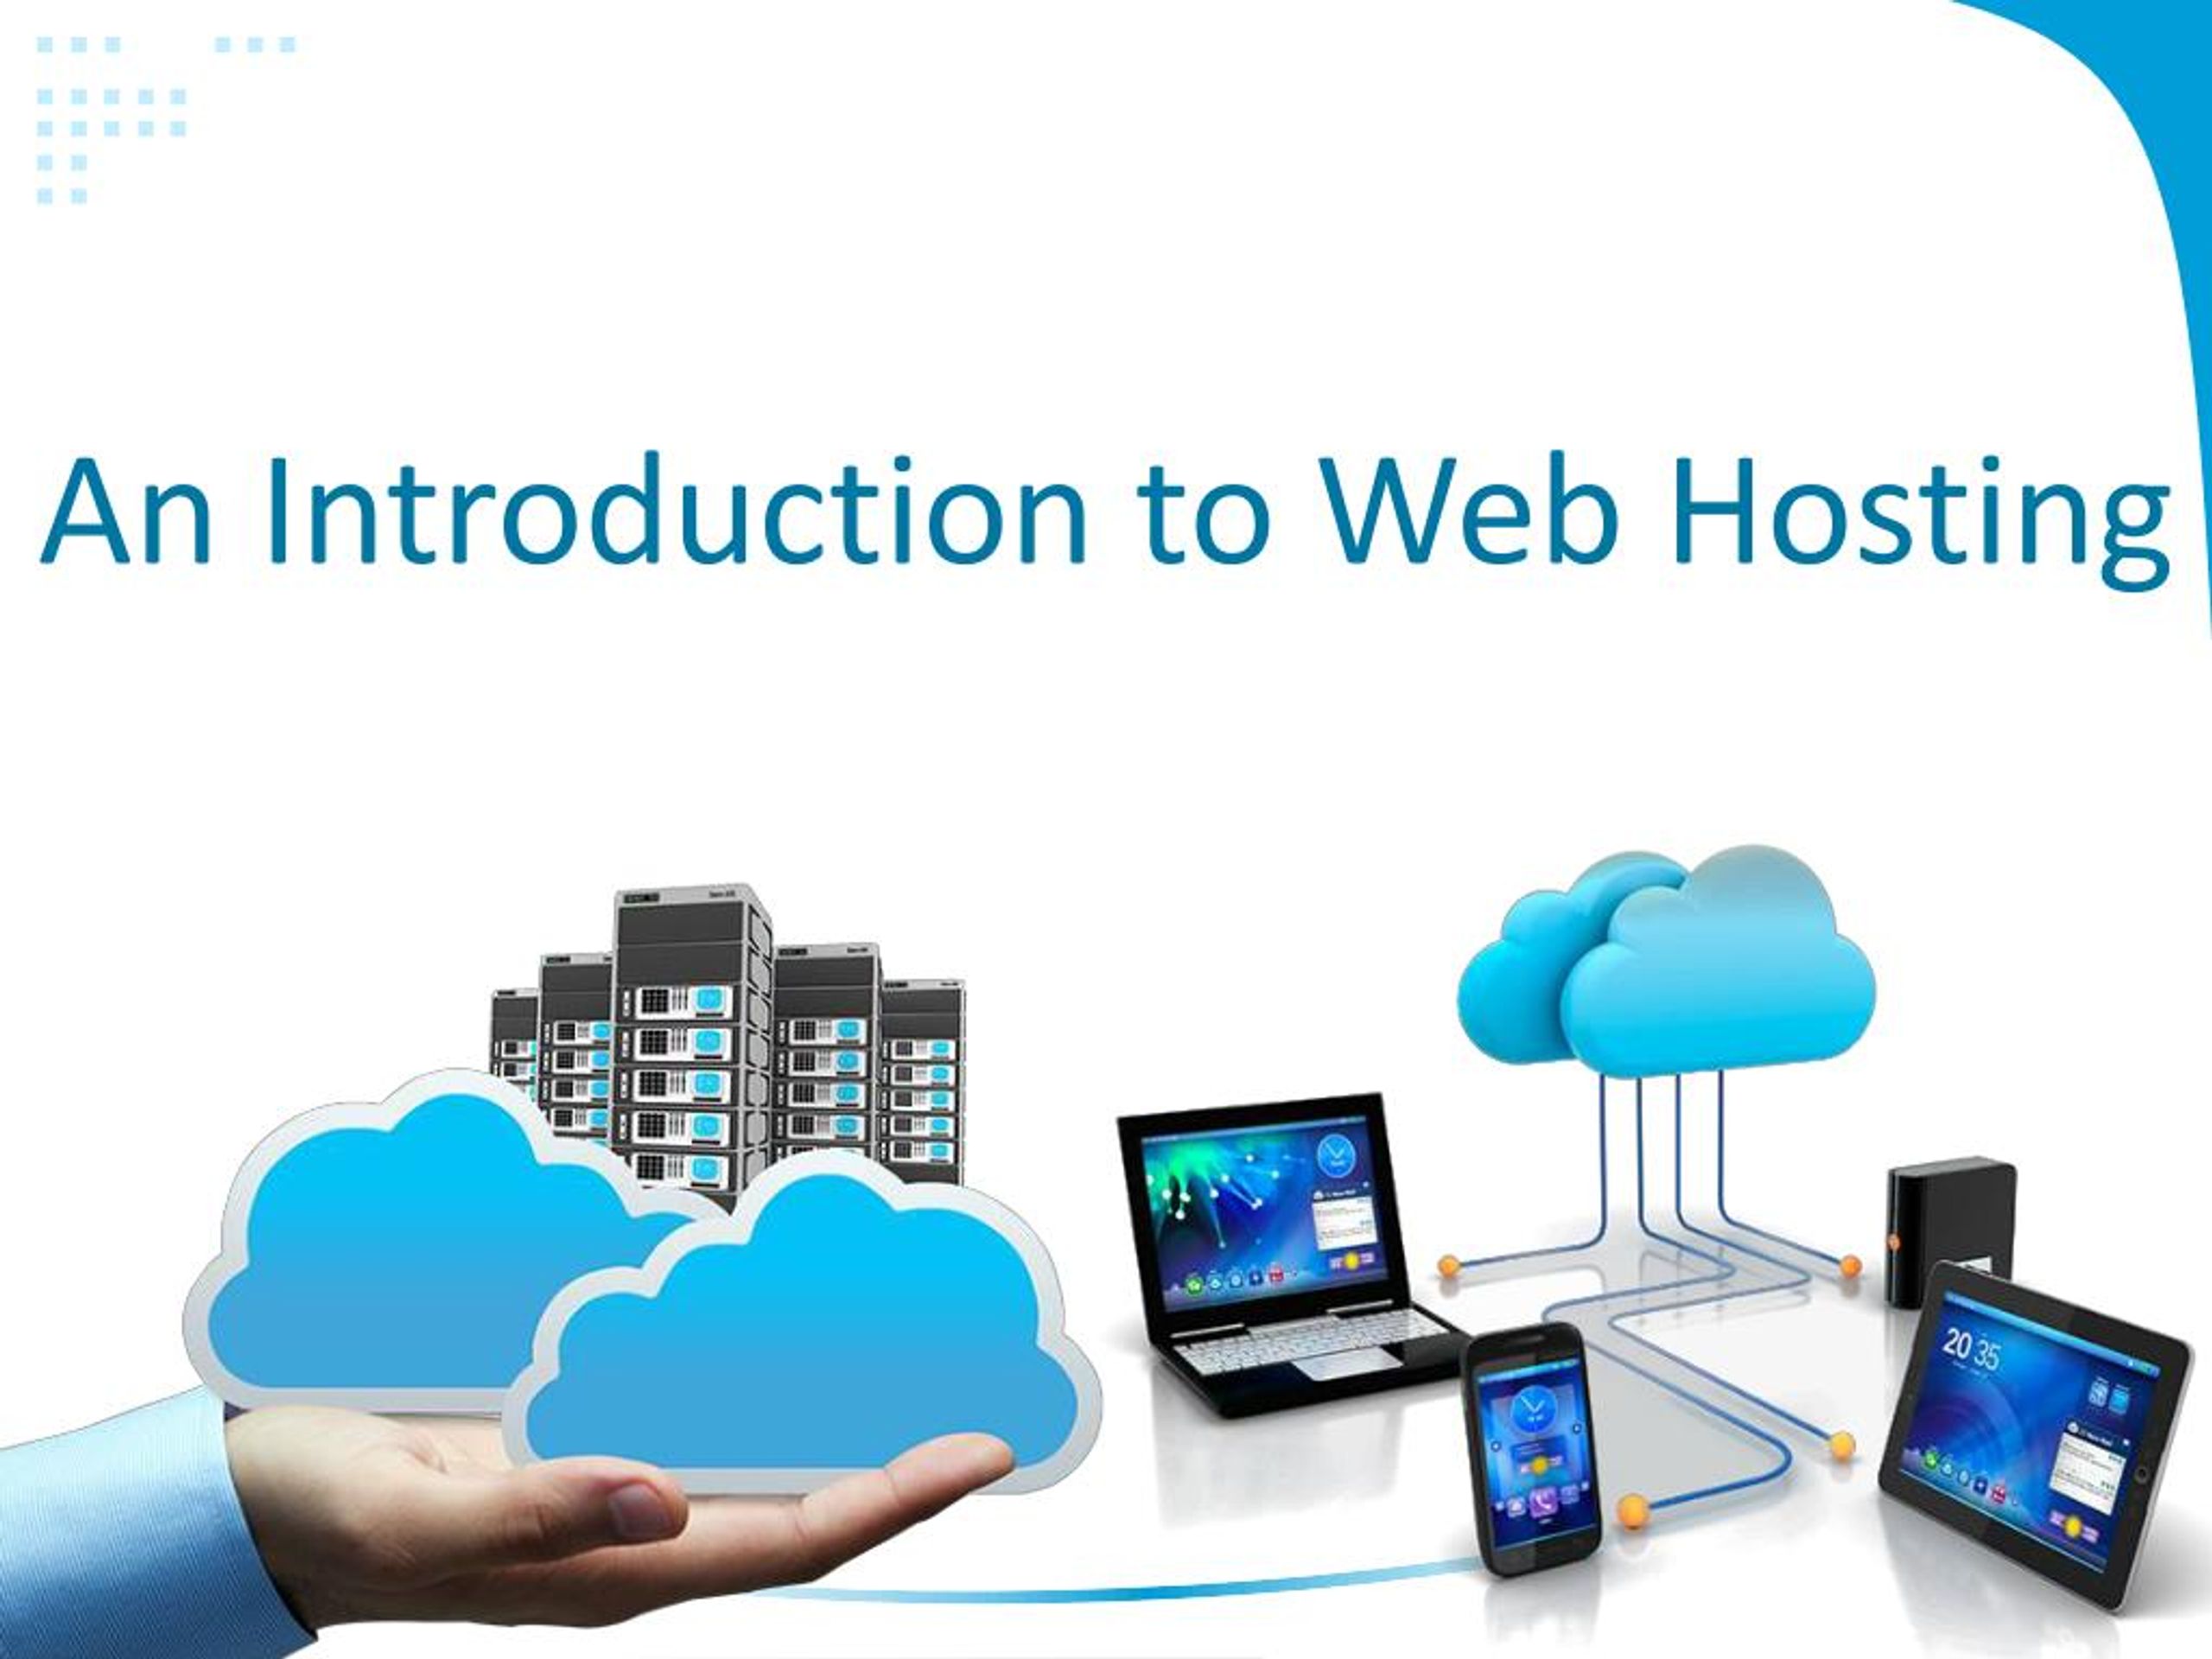 web hosting ppt download